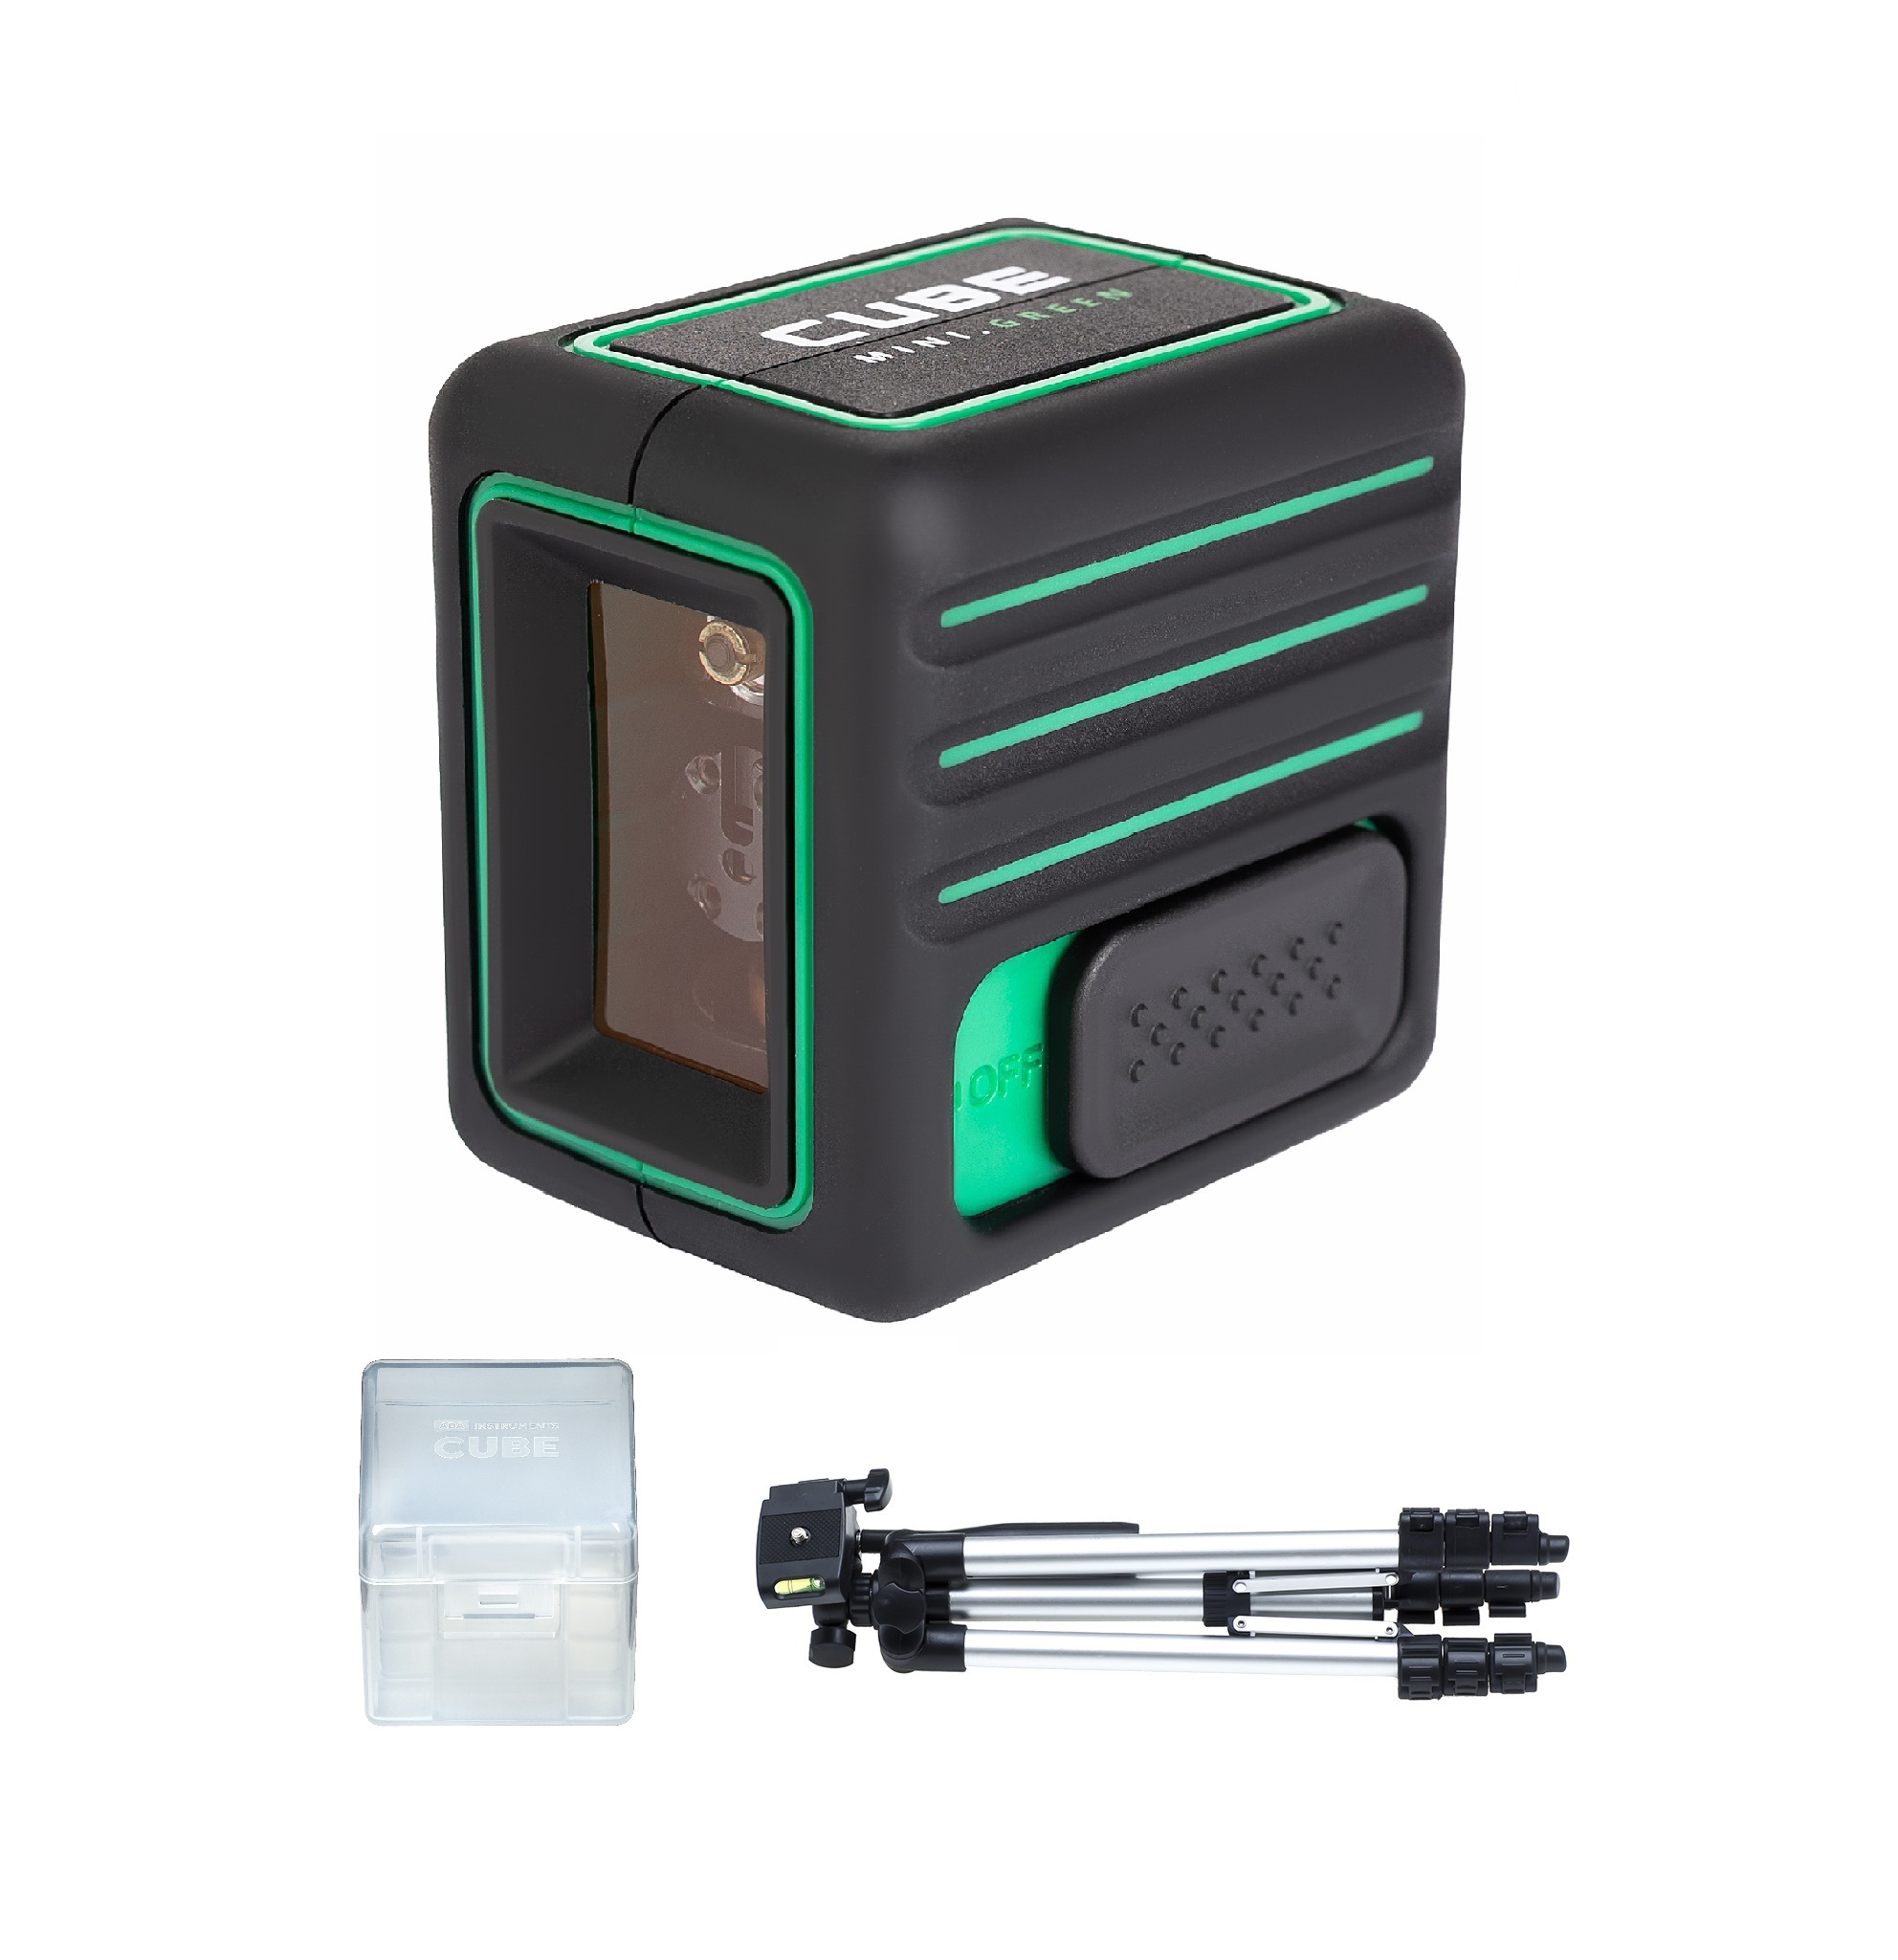 лазерный уровень ada cube 3d professional edition 1 5а штатив нейлоновая сумка 65х65х65мм до 20м Лазерный уровень ADA CUBE MINI GREEN Professional Edition